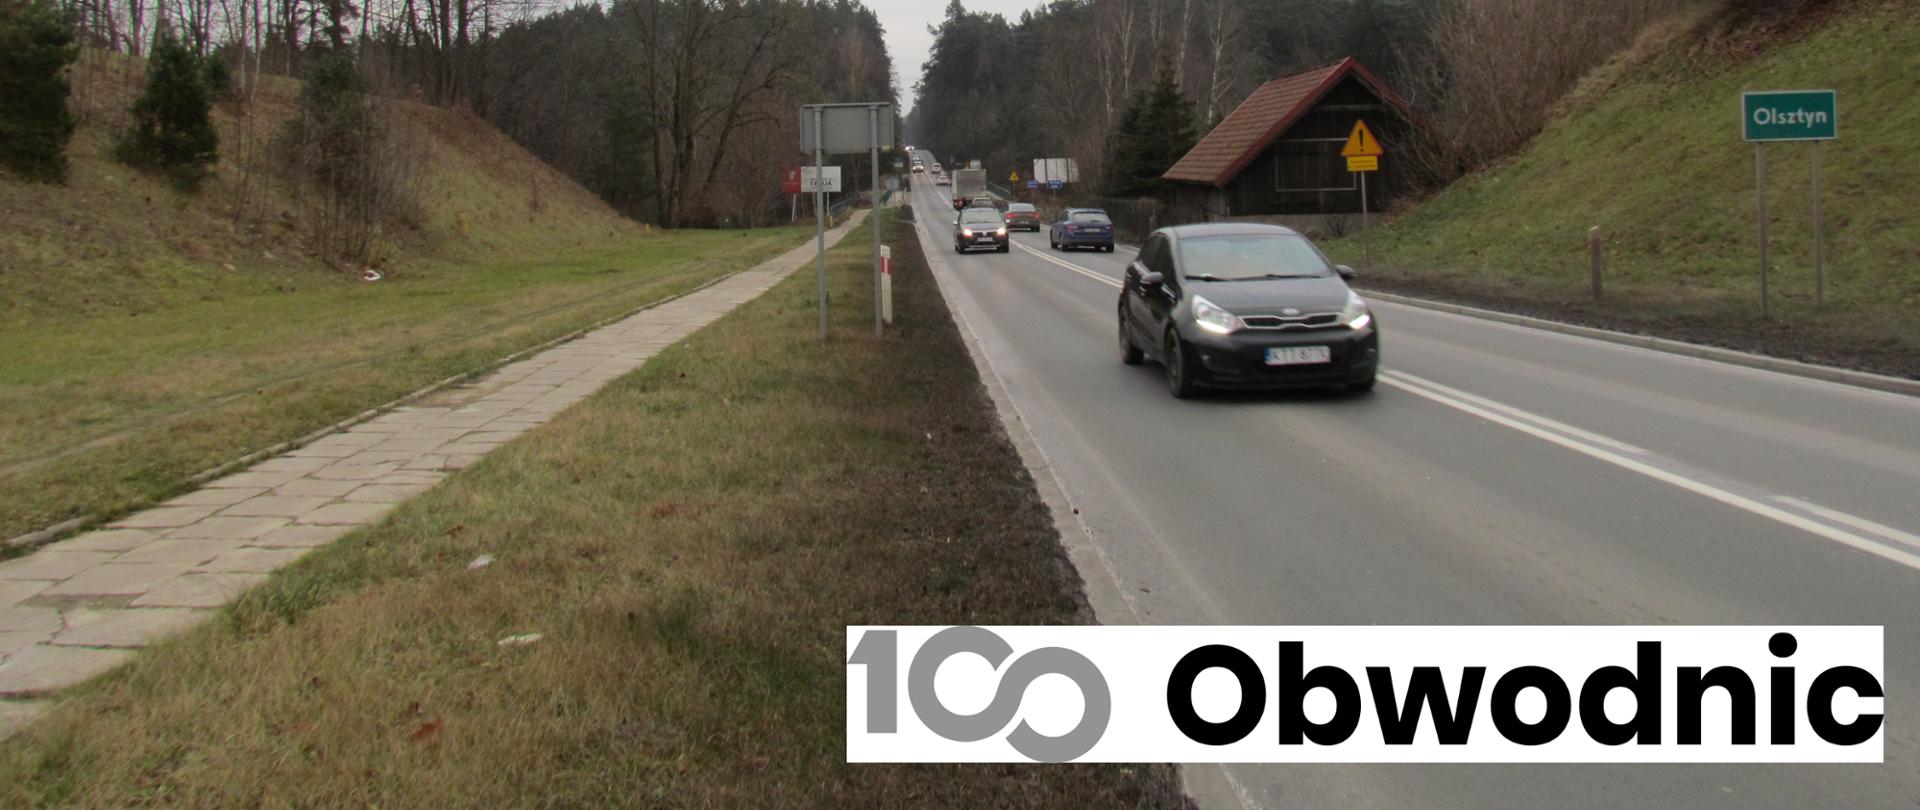 Asfaltowa droga wiodąca przez las. Po prawej stronie drogi tablica z nazwą miejscowości: Olsztyn.